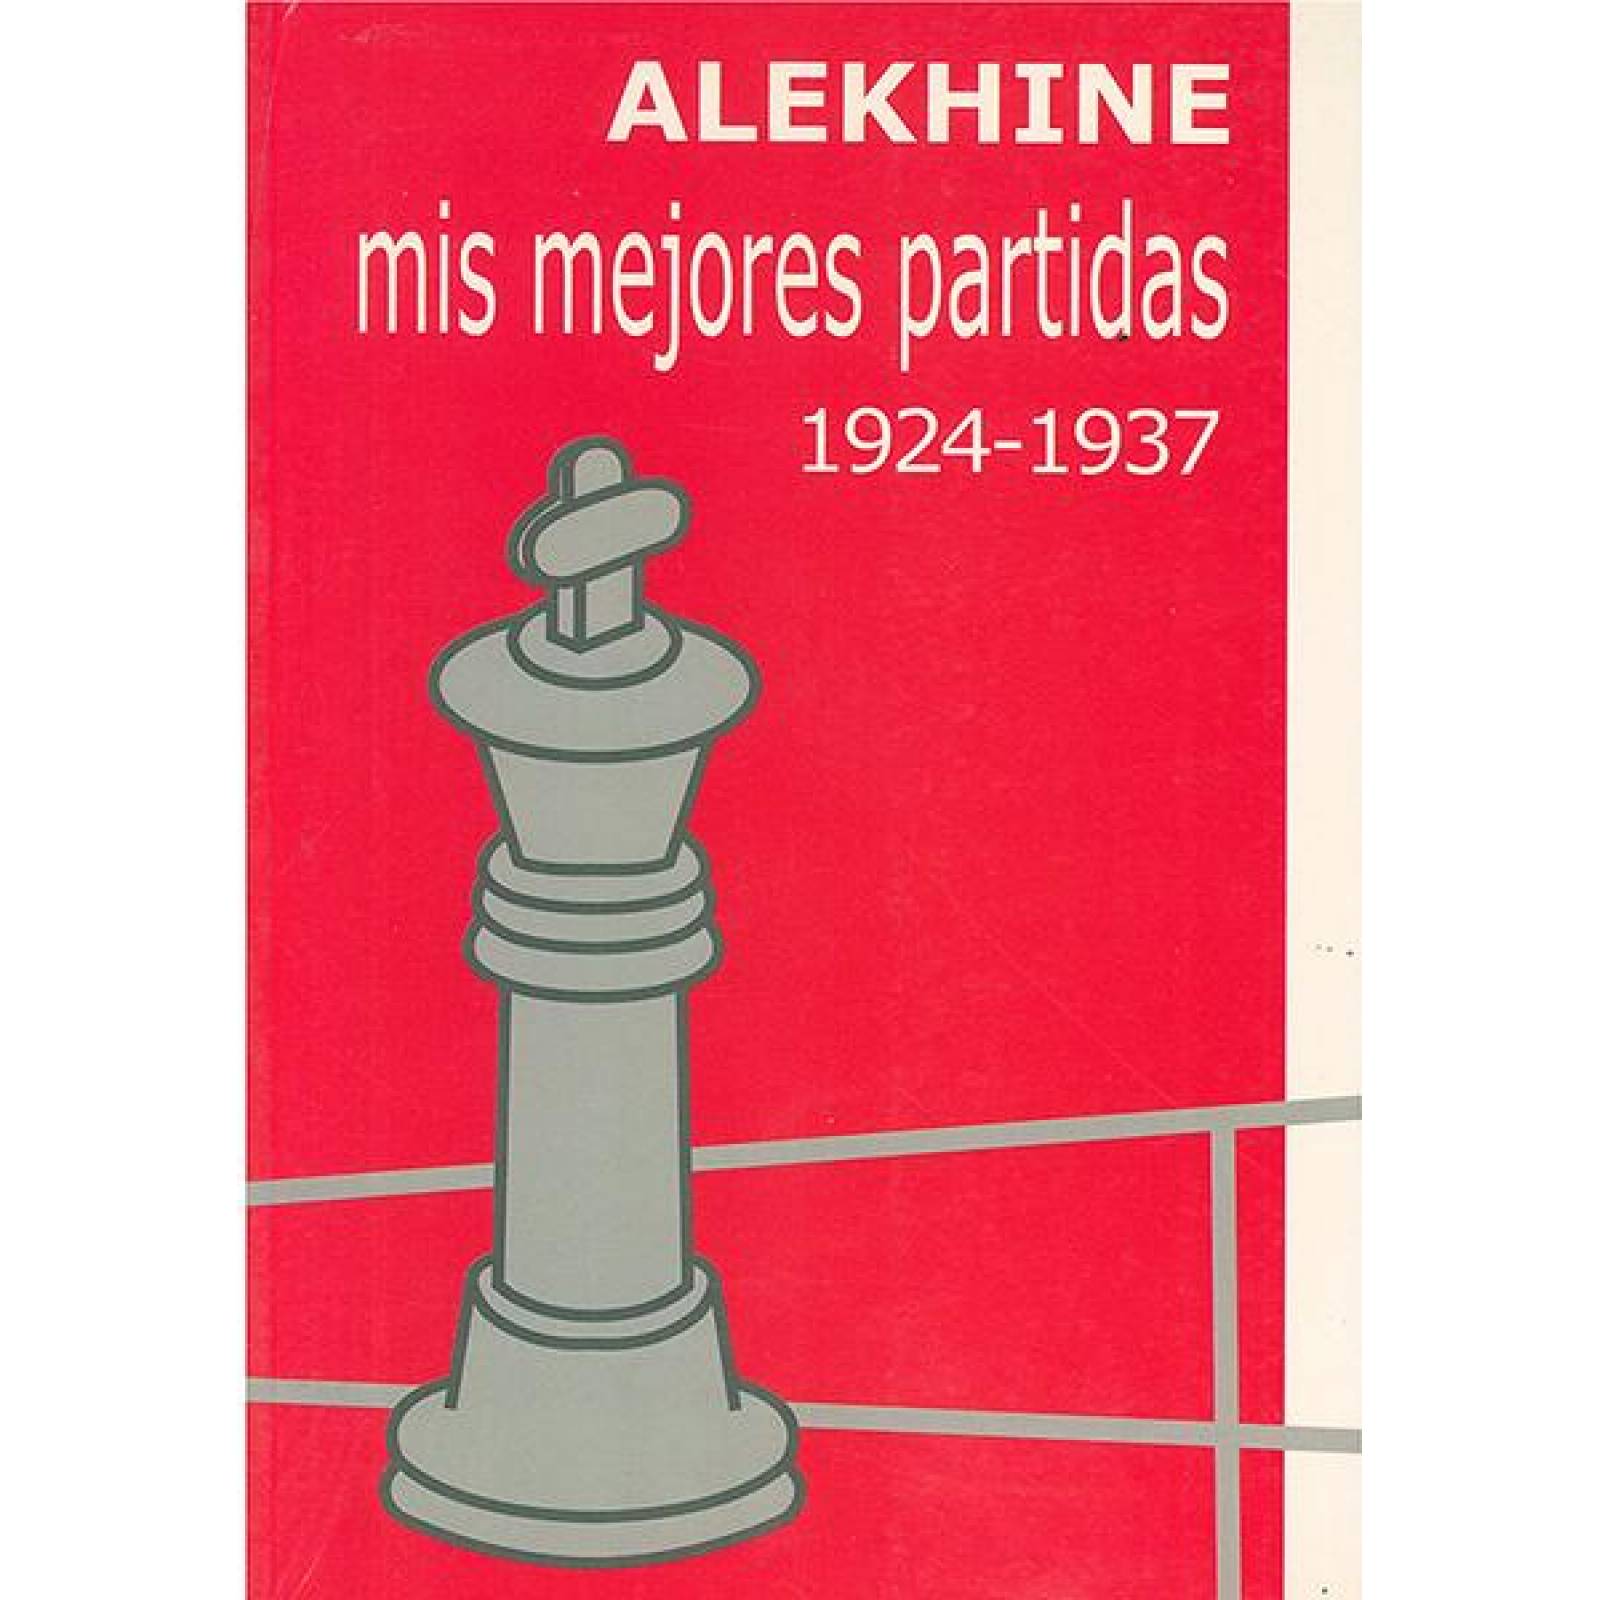 Alekhine, mis mejores partidas 1924-1937 